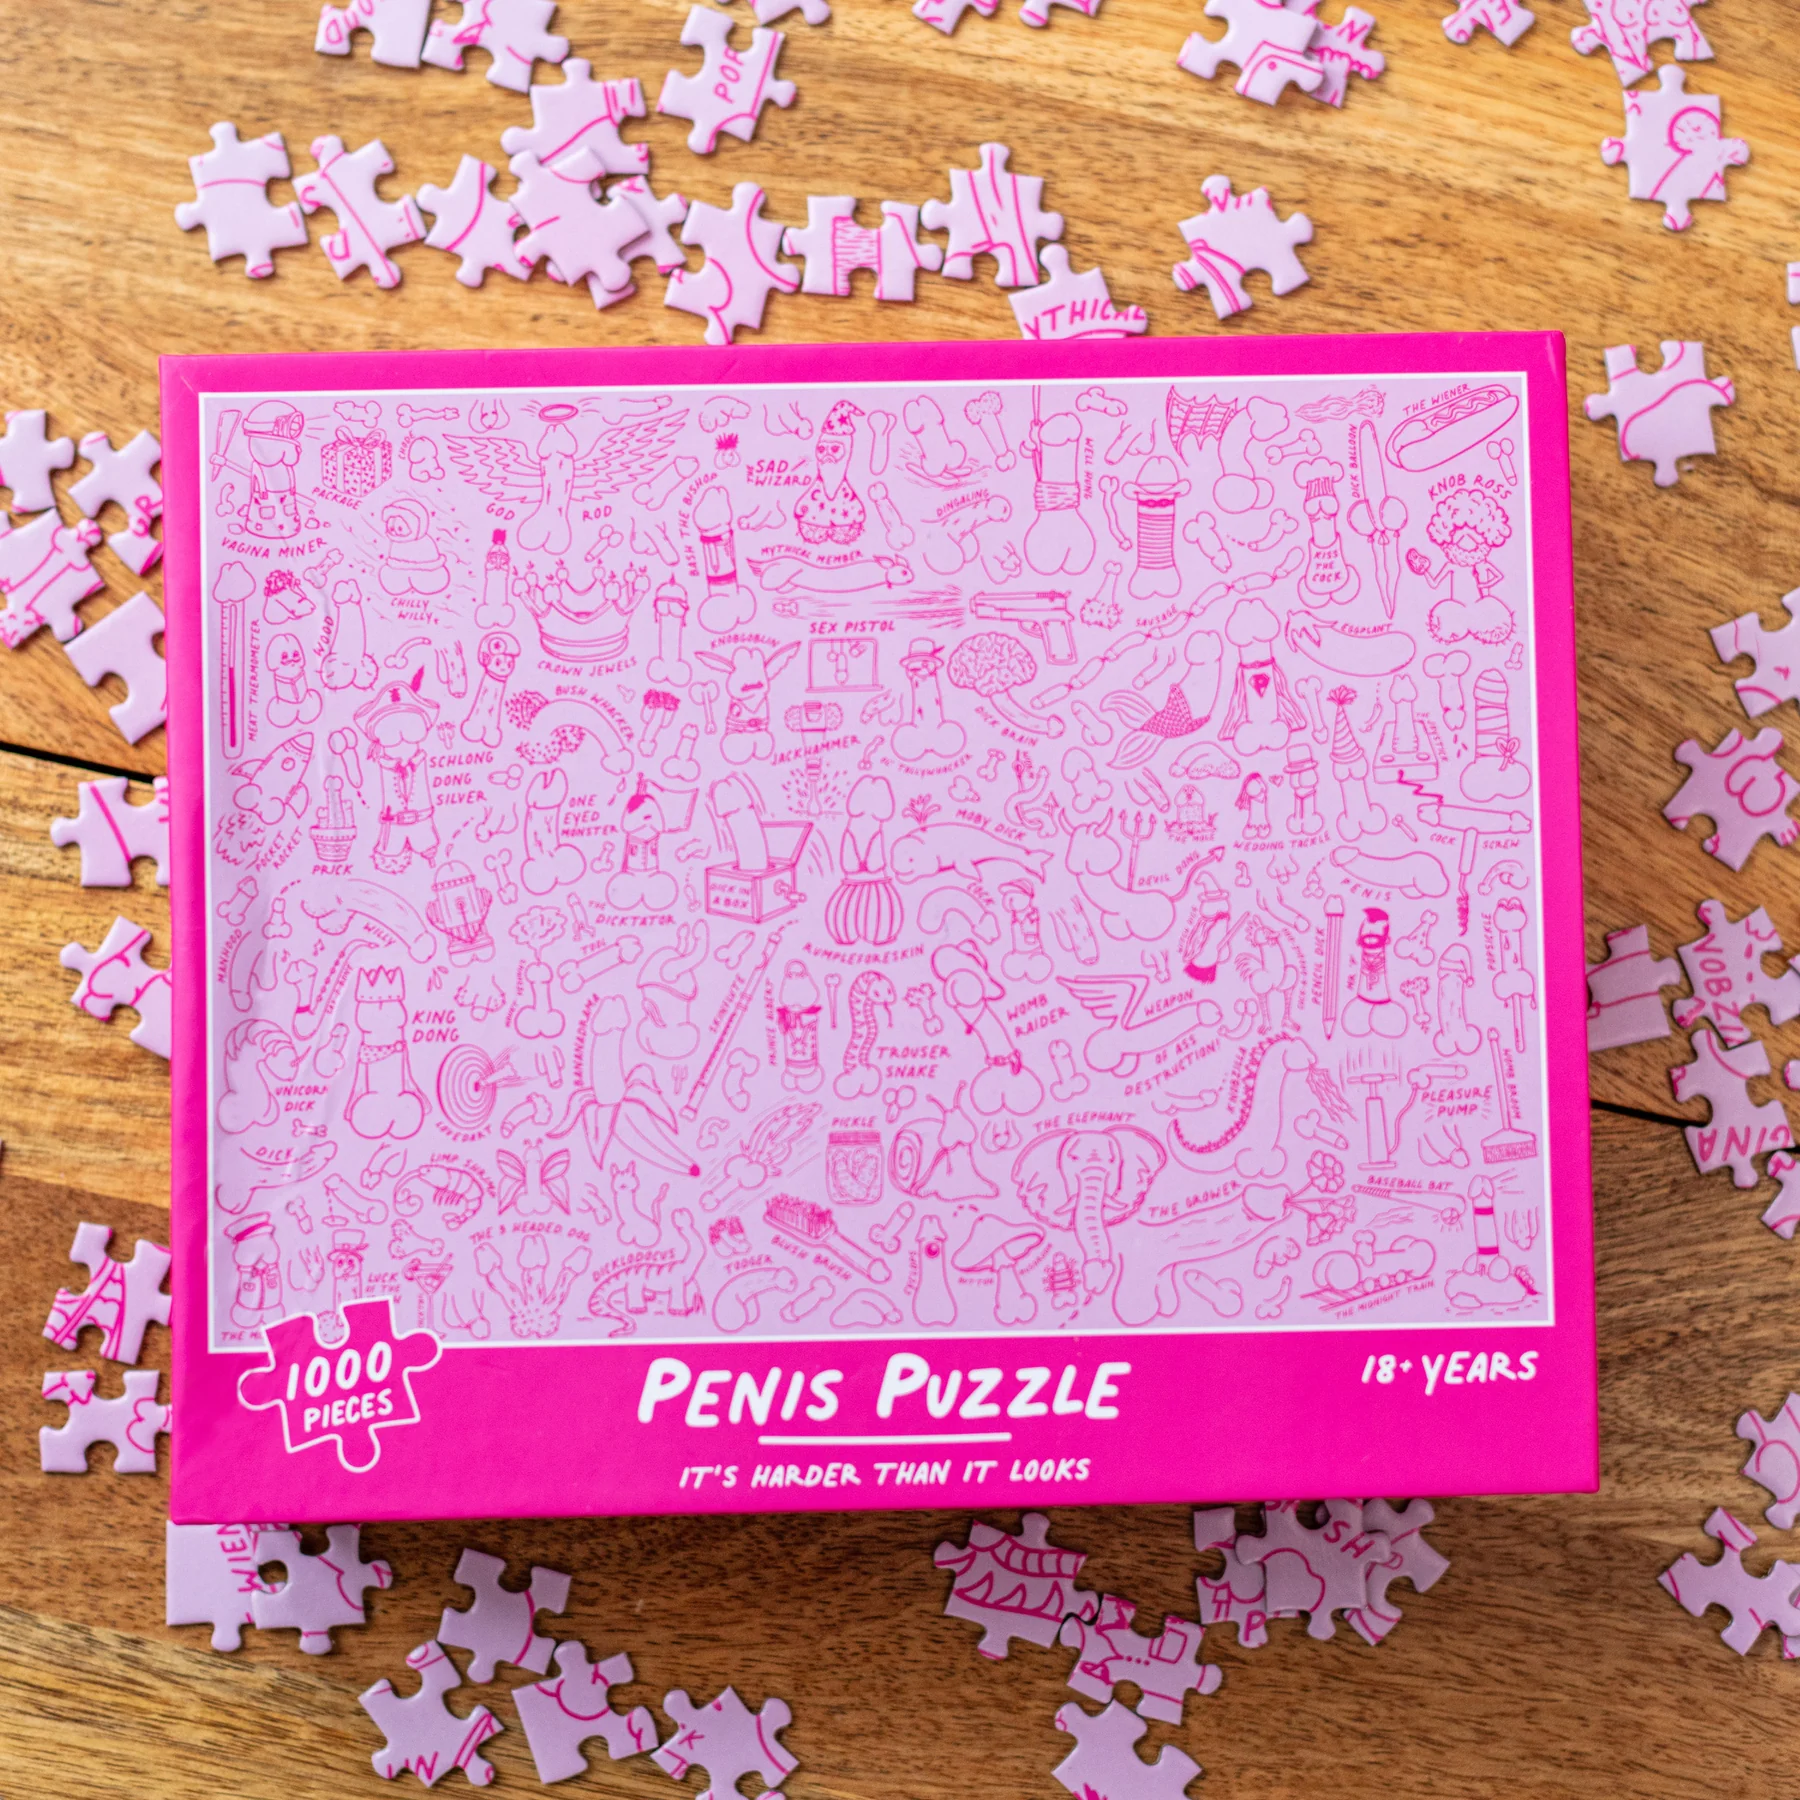 Penis Puzzle